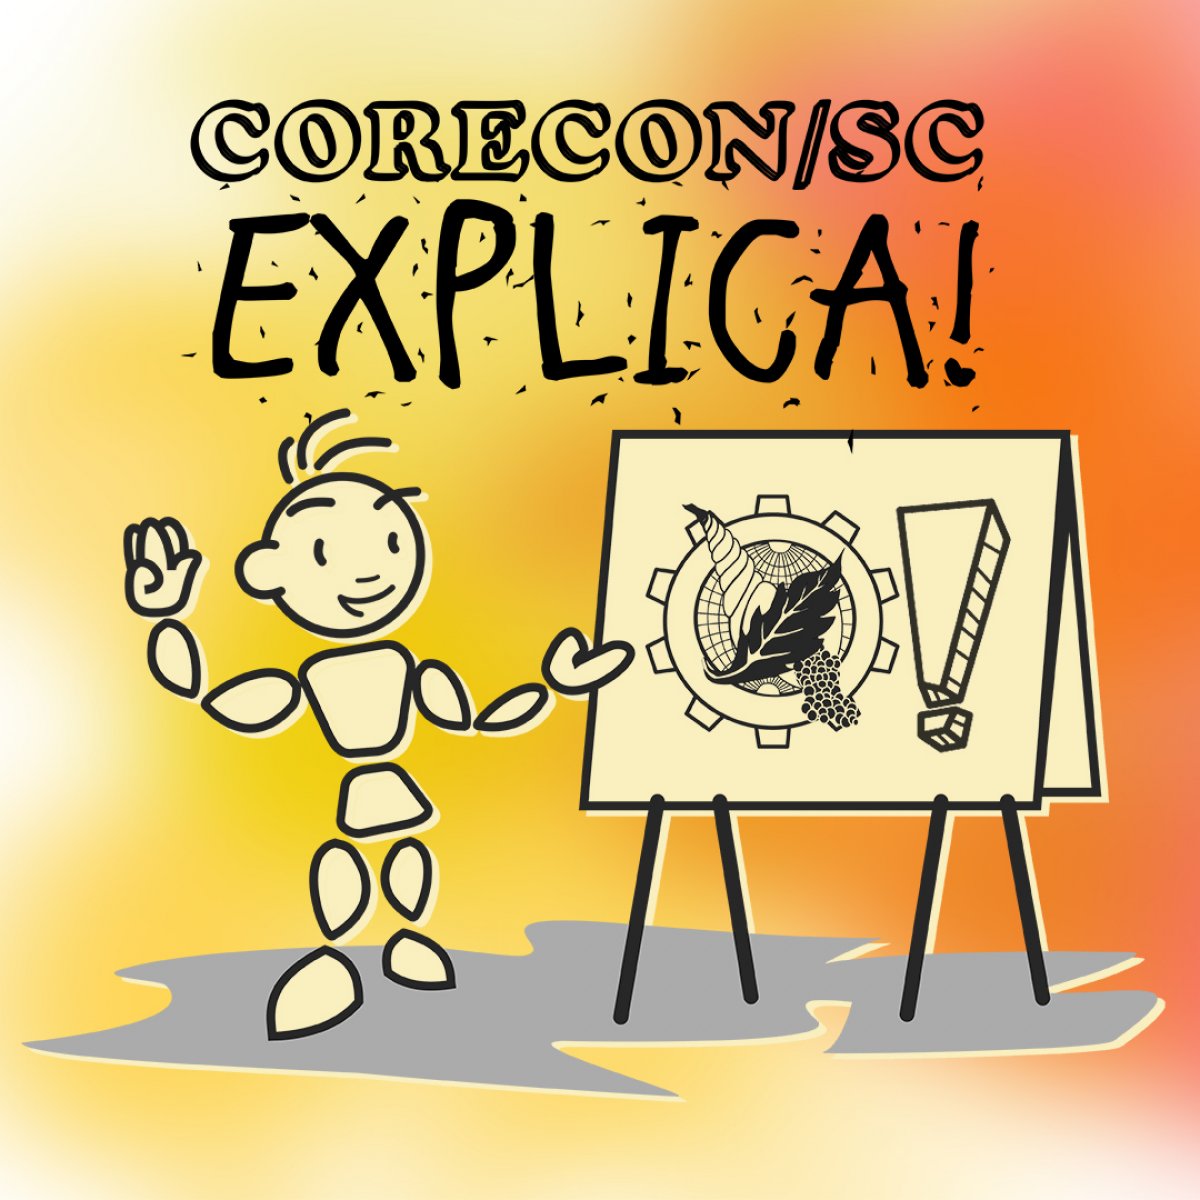 Corecon/SC Explica! - Corecon/SC